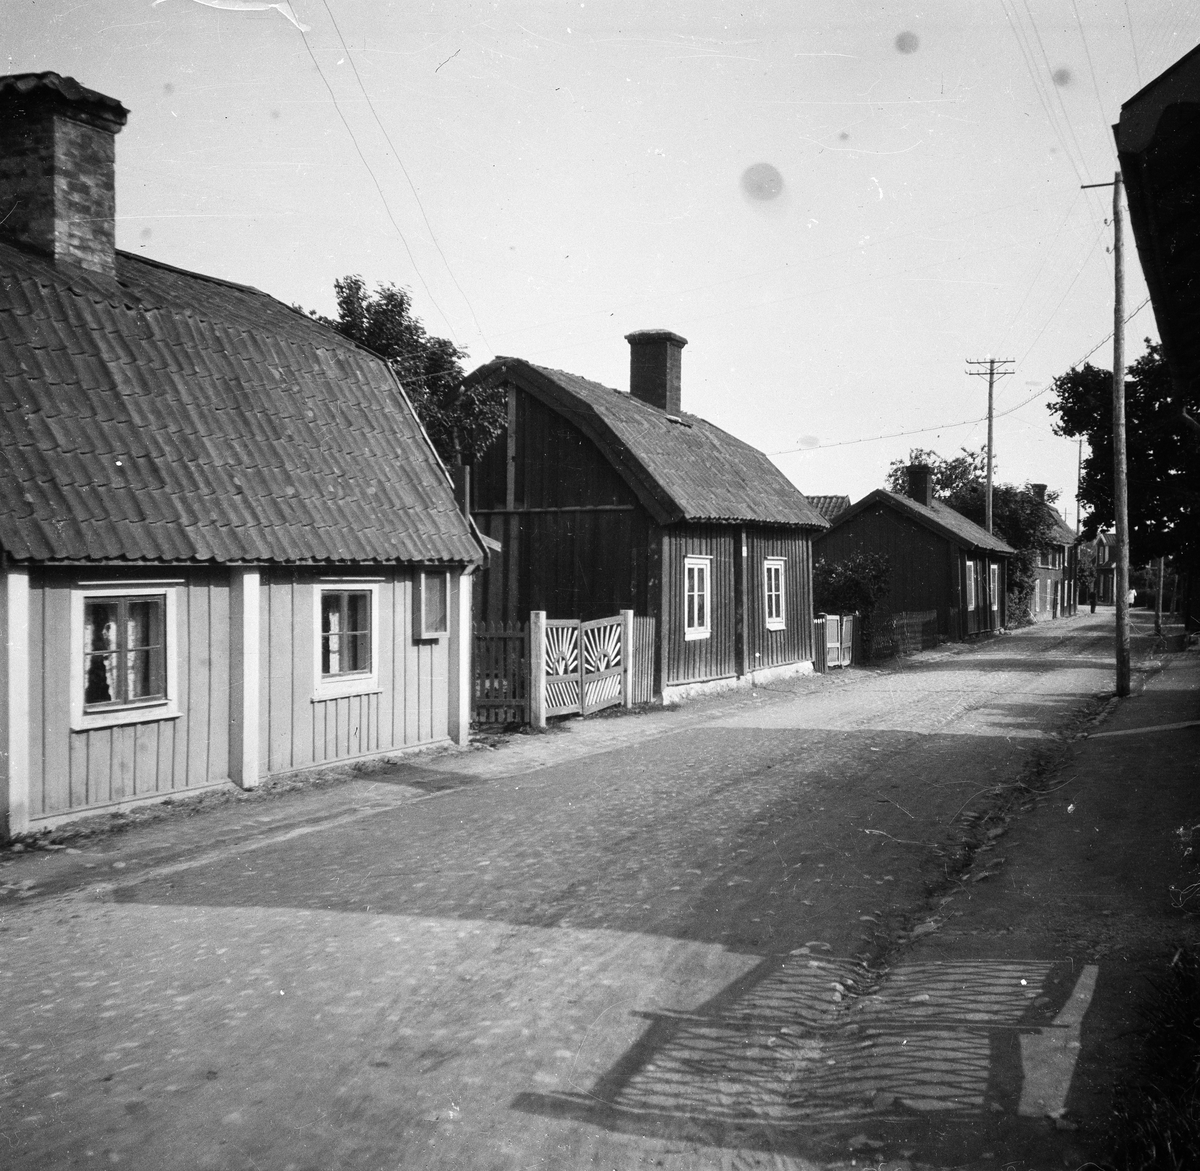 Trosa, Södermanland
Exteriör

Svensk arkitektur: kyrkor, herrgårdar med mera fotograferade av Arkitekturminnesföreningen 1908-23.